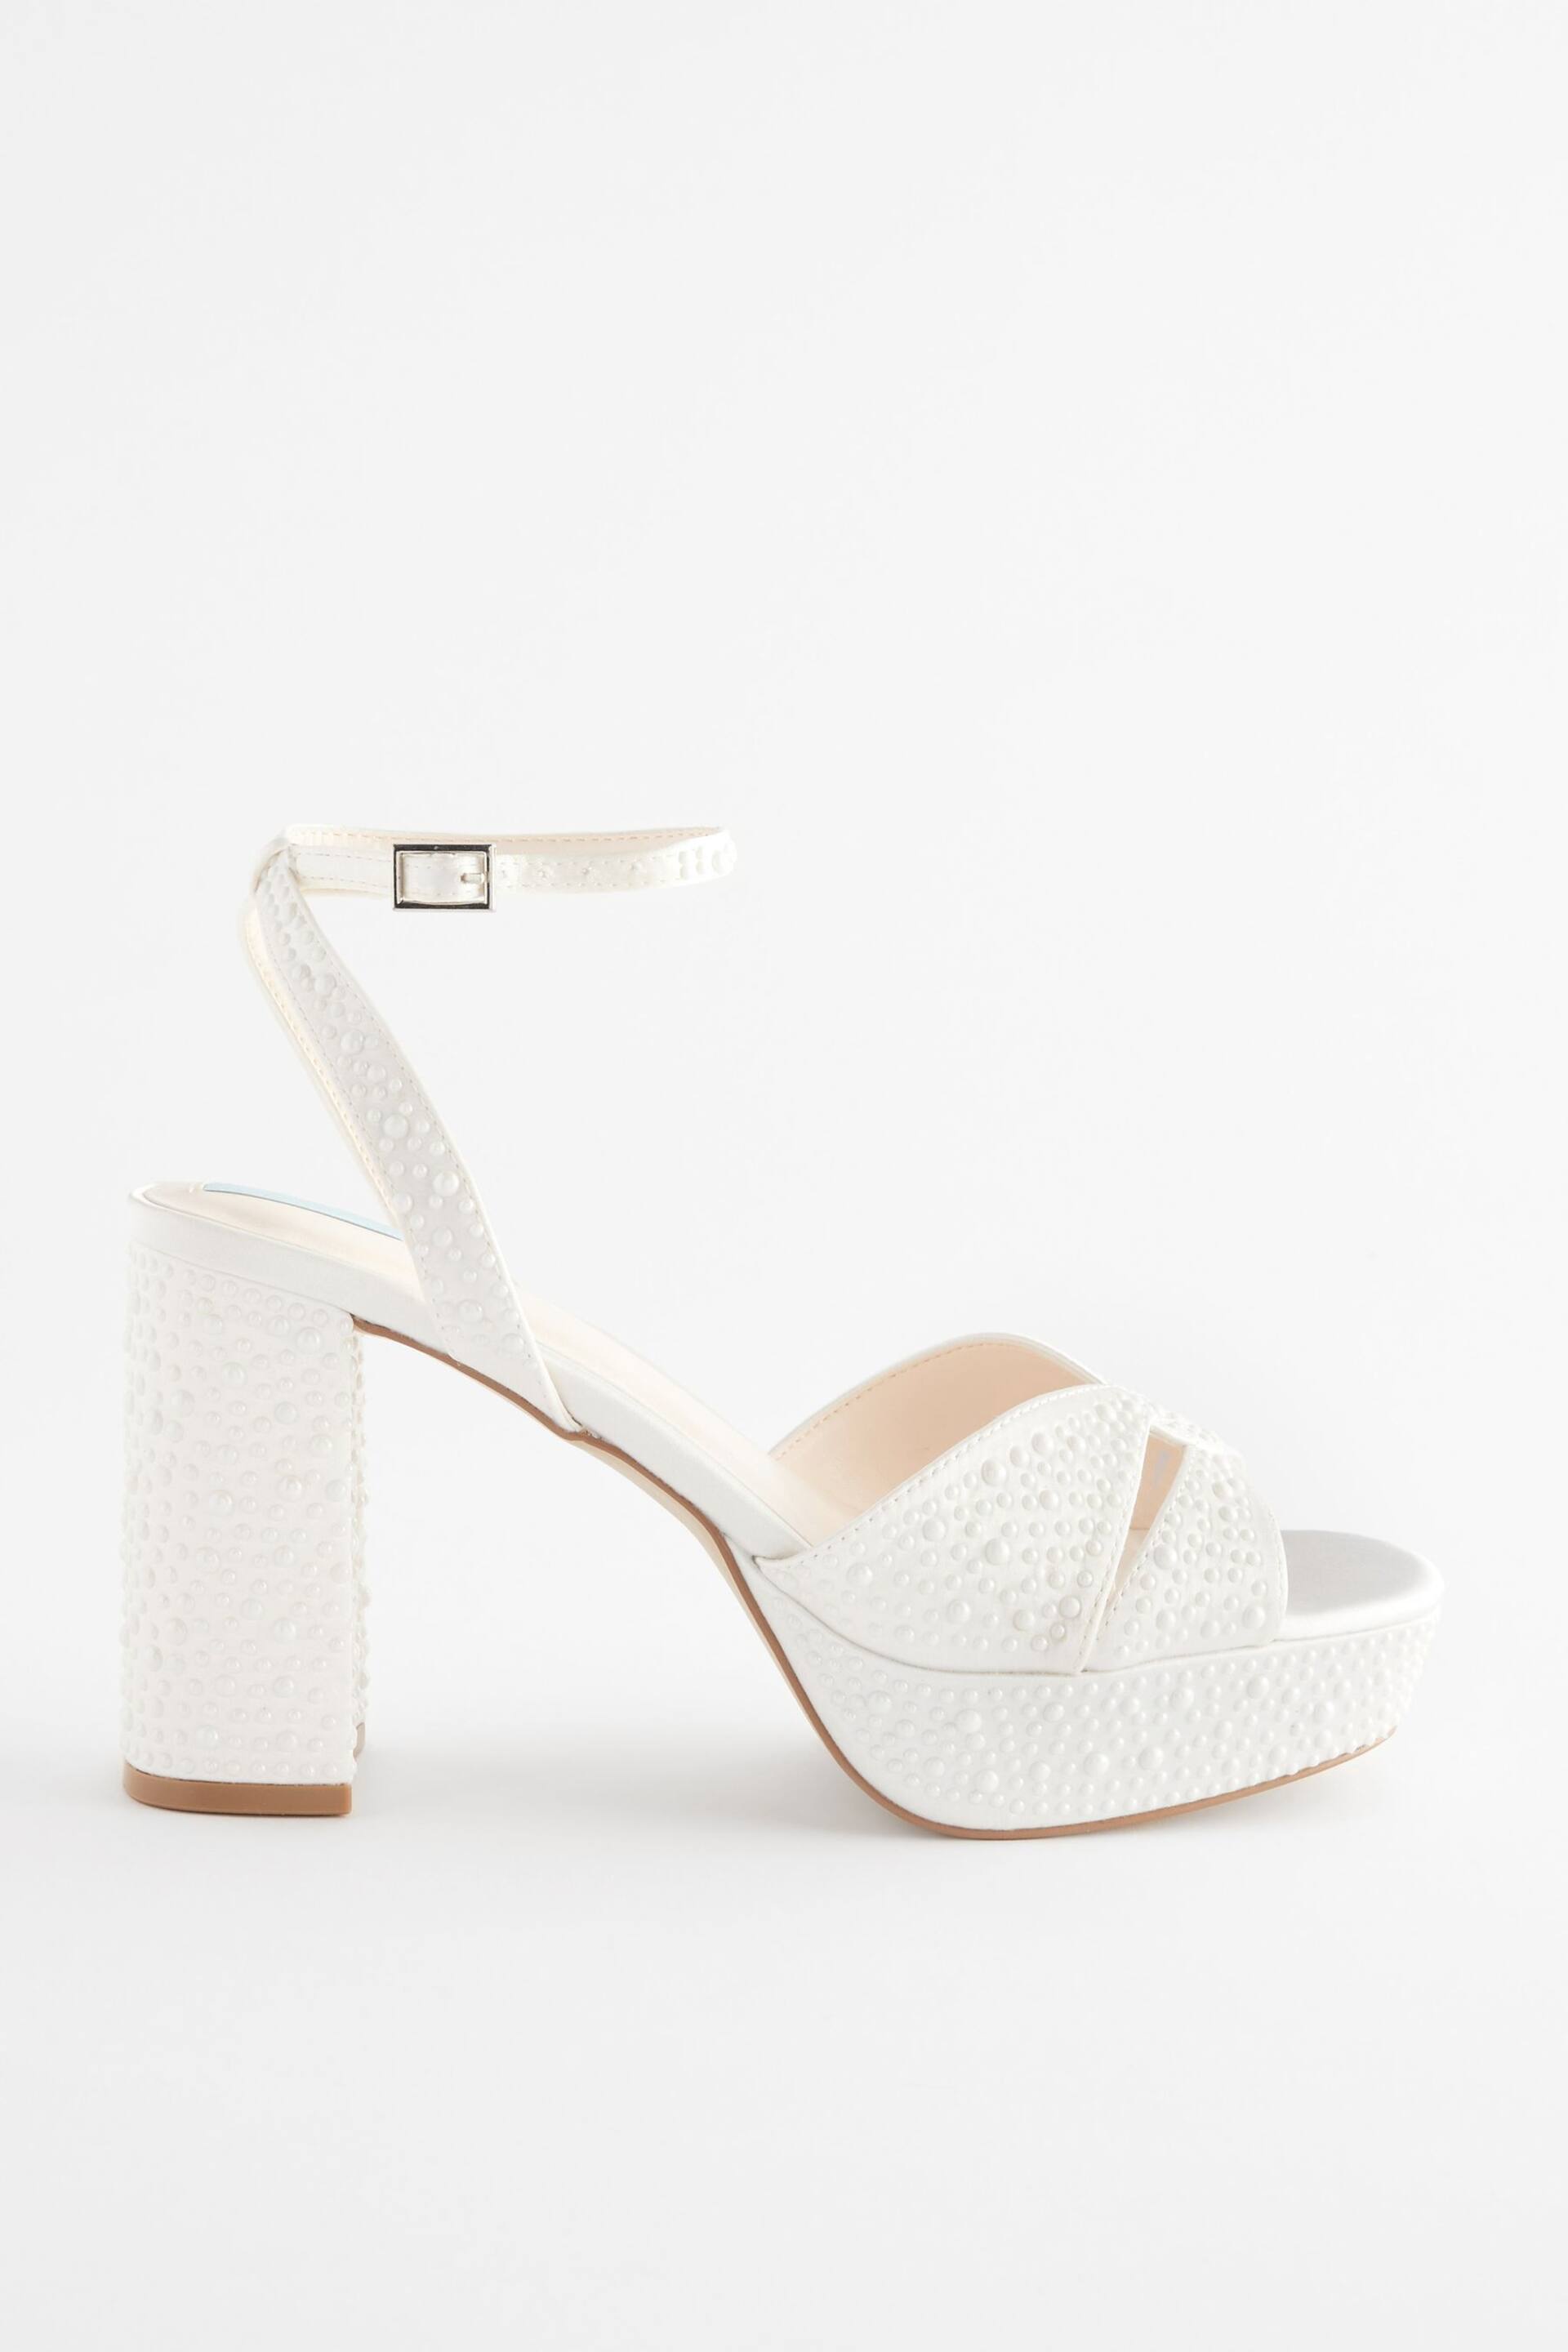 Ivory Forever Comfort® Wedding Pearl Platform Bridal Ivory Sandals - Image 6 of 9